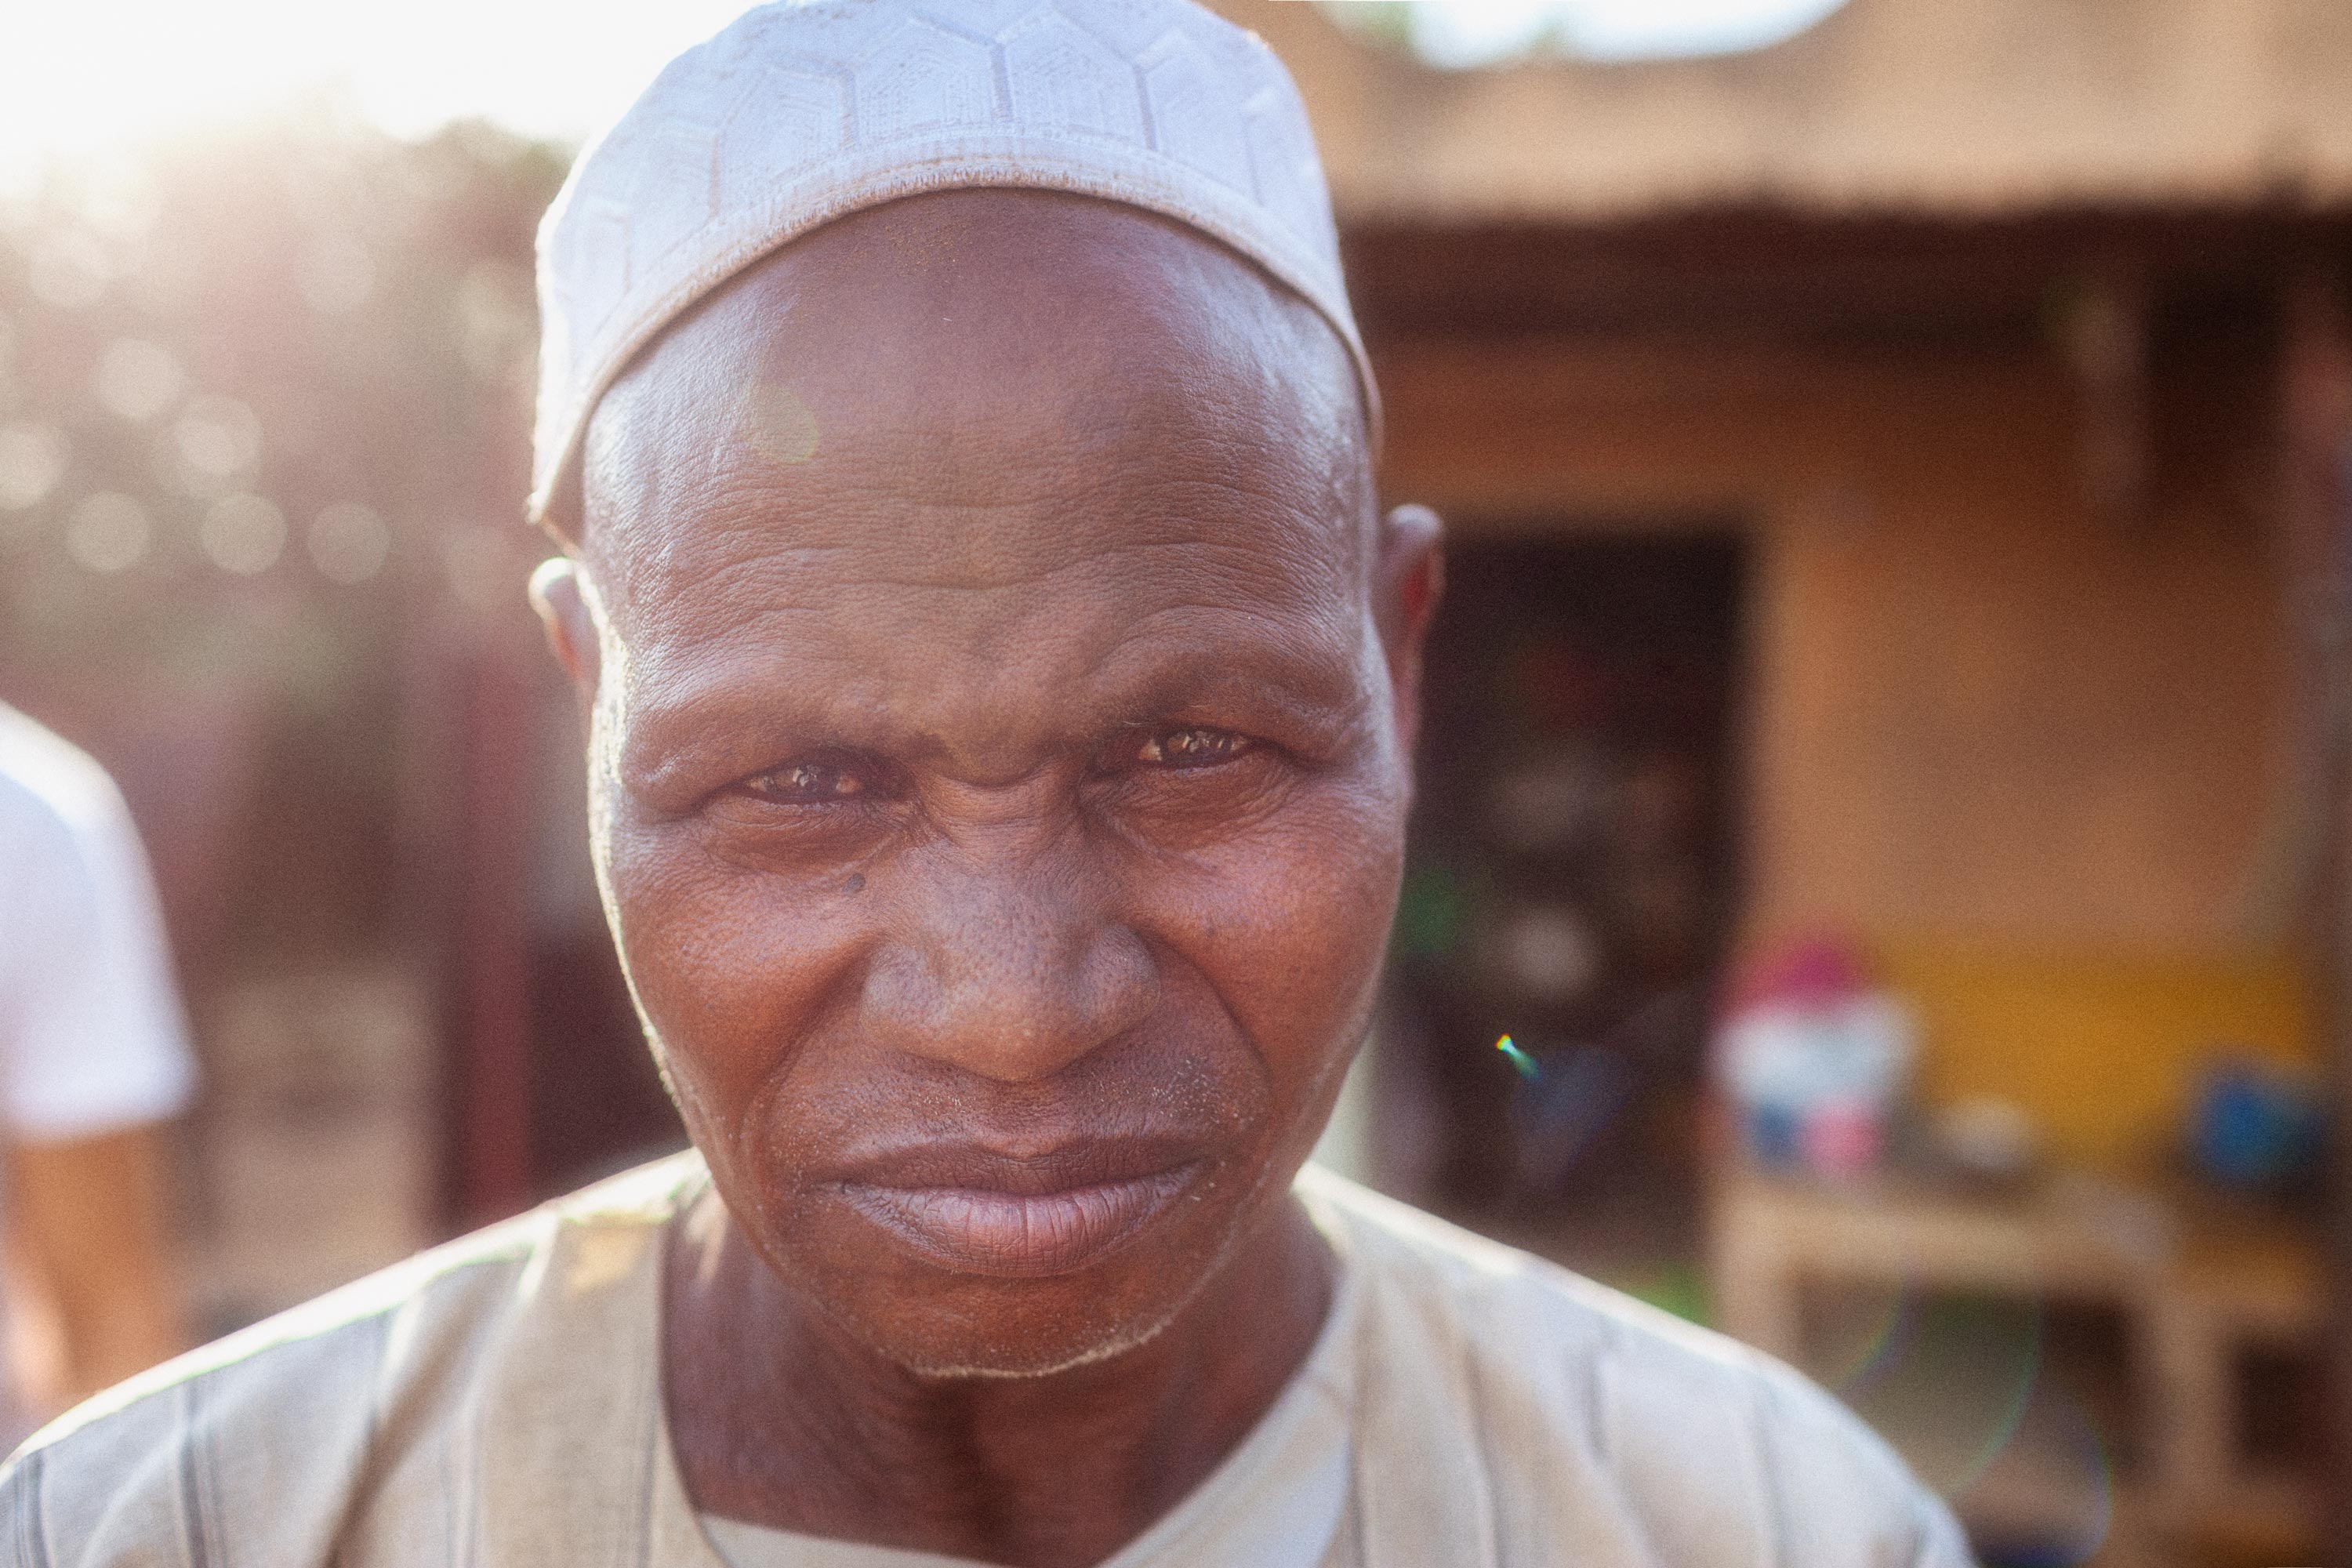 Mann vor einem Geschäft in Mali schaut böse in die Kamera